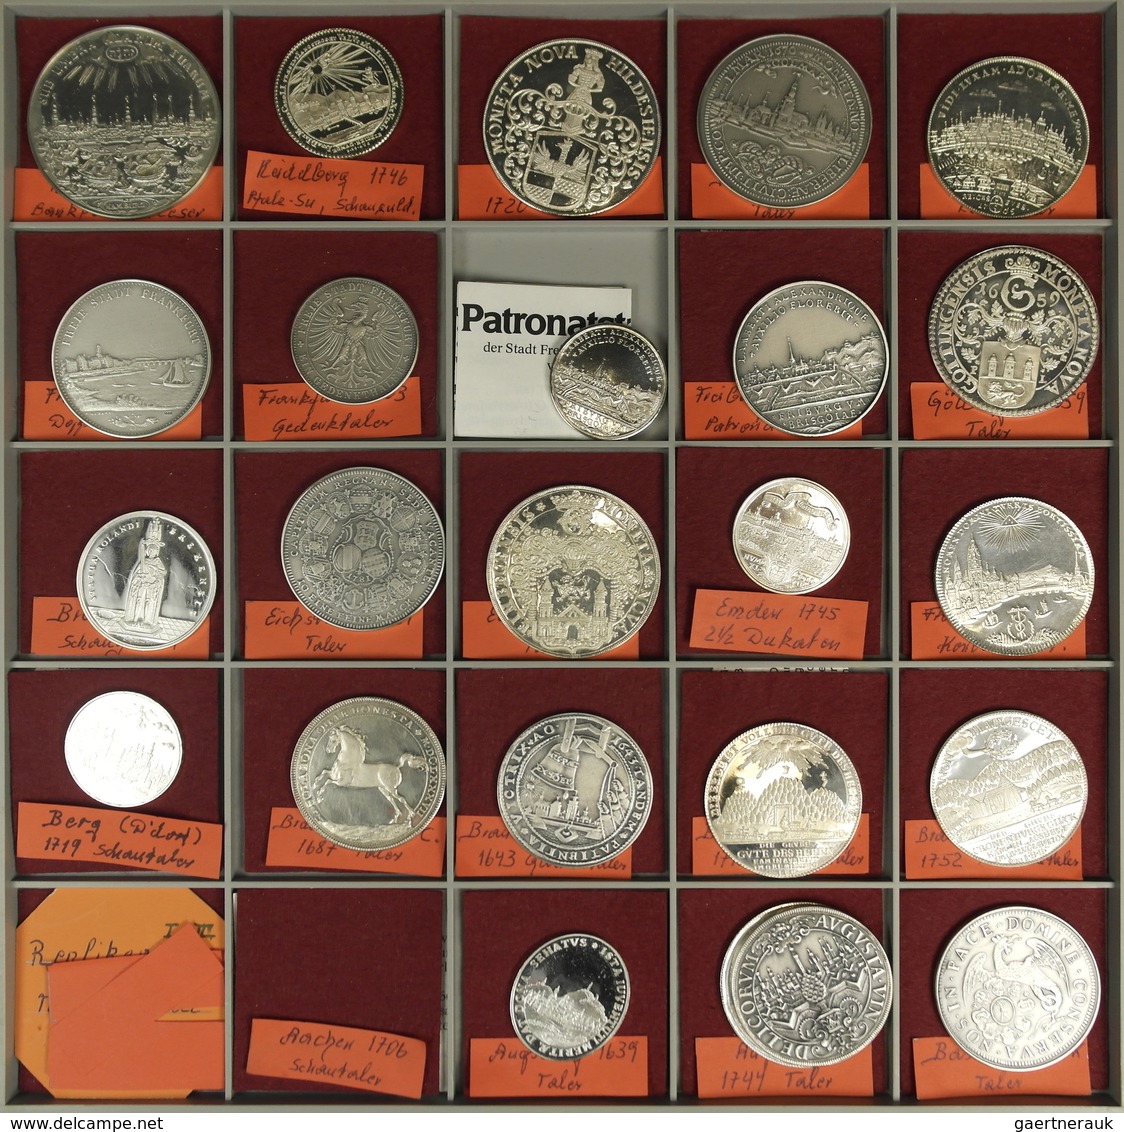 Alle Welt: Das Fenster zur Welt...... Im Frühjahr 1973 besuchte unser Sammler erstmals eine Münzenme